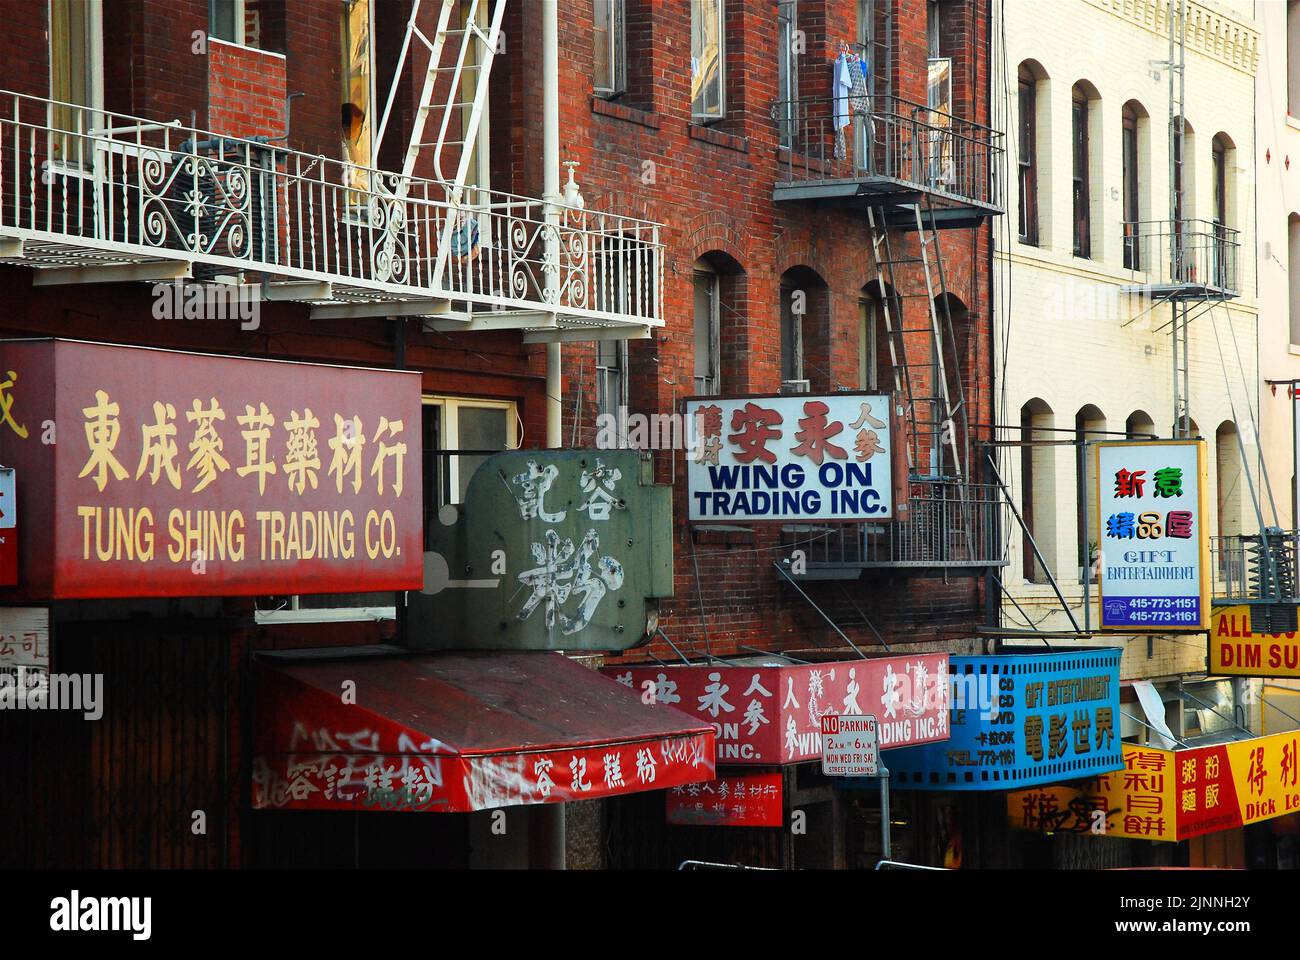 Les panneaux abondent pour les nombreuses petites entreprises uniques qui se rassemblent dans les bâtiments du quartier chinois de San Francisco Banque D'Images